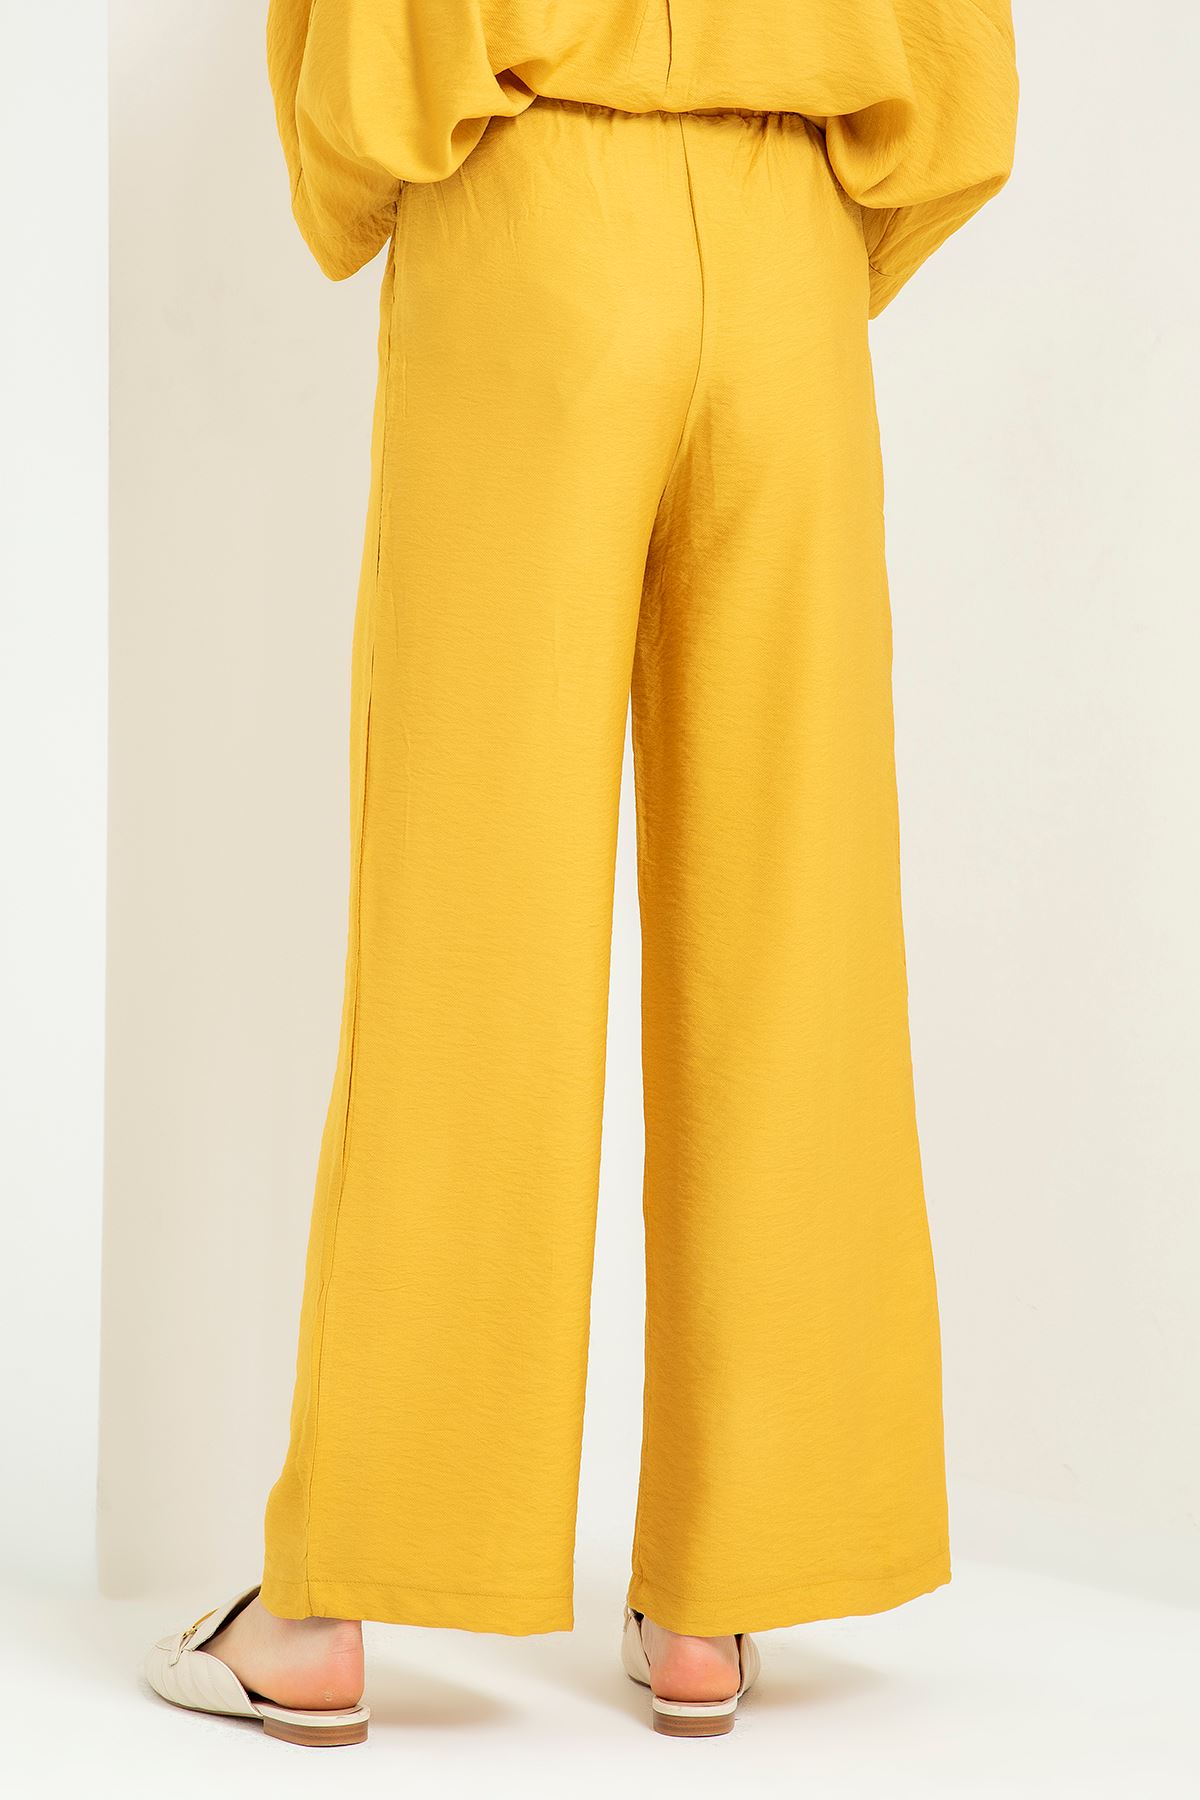 Аэробин Ткань Женские брюки с эластичной резинкой на талии - Коричневый